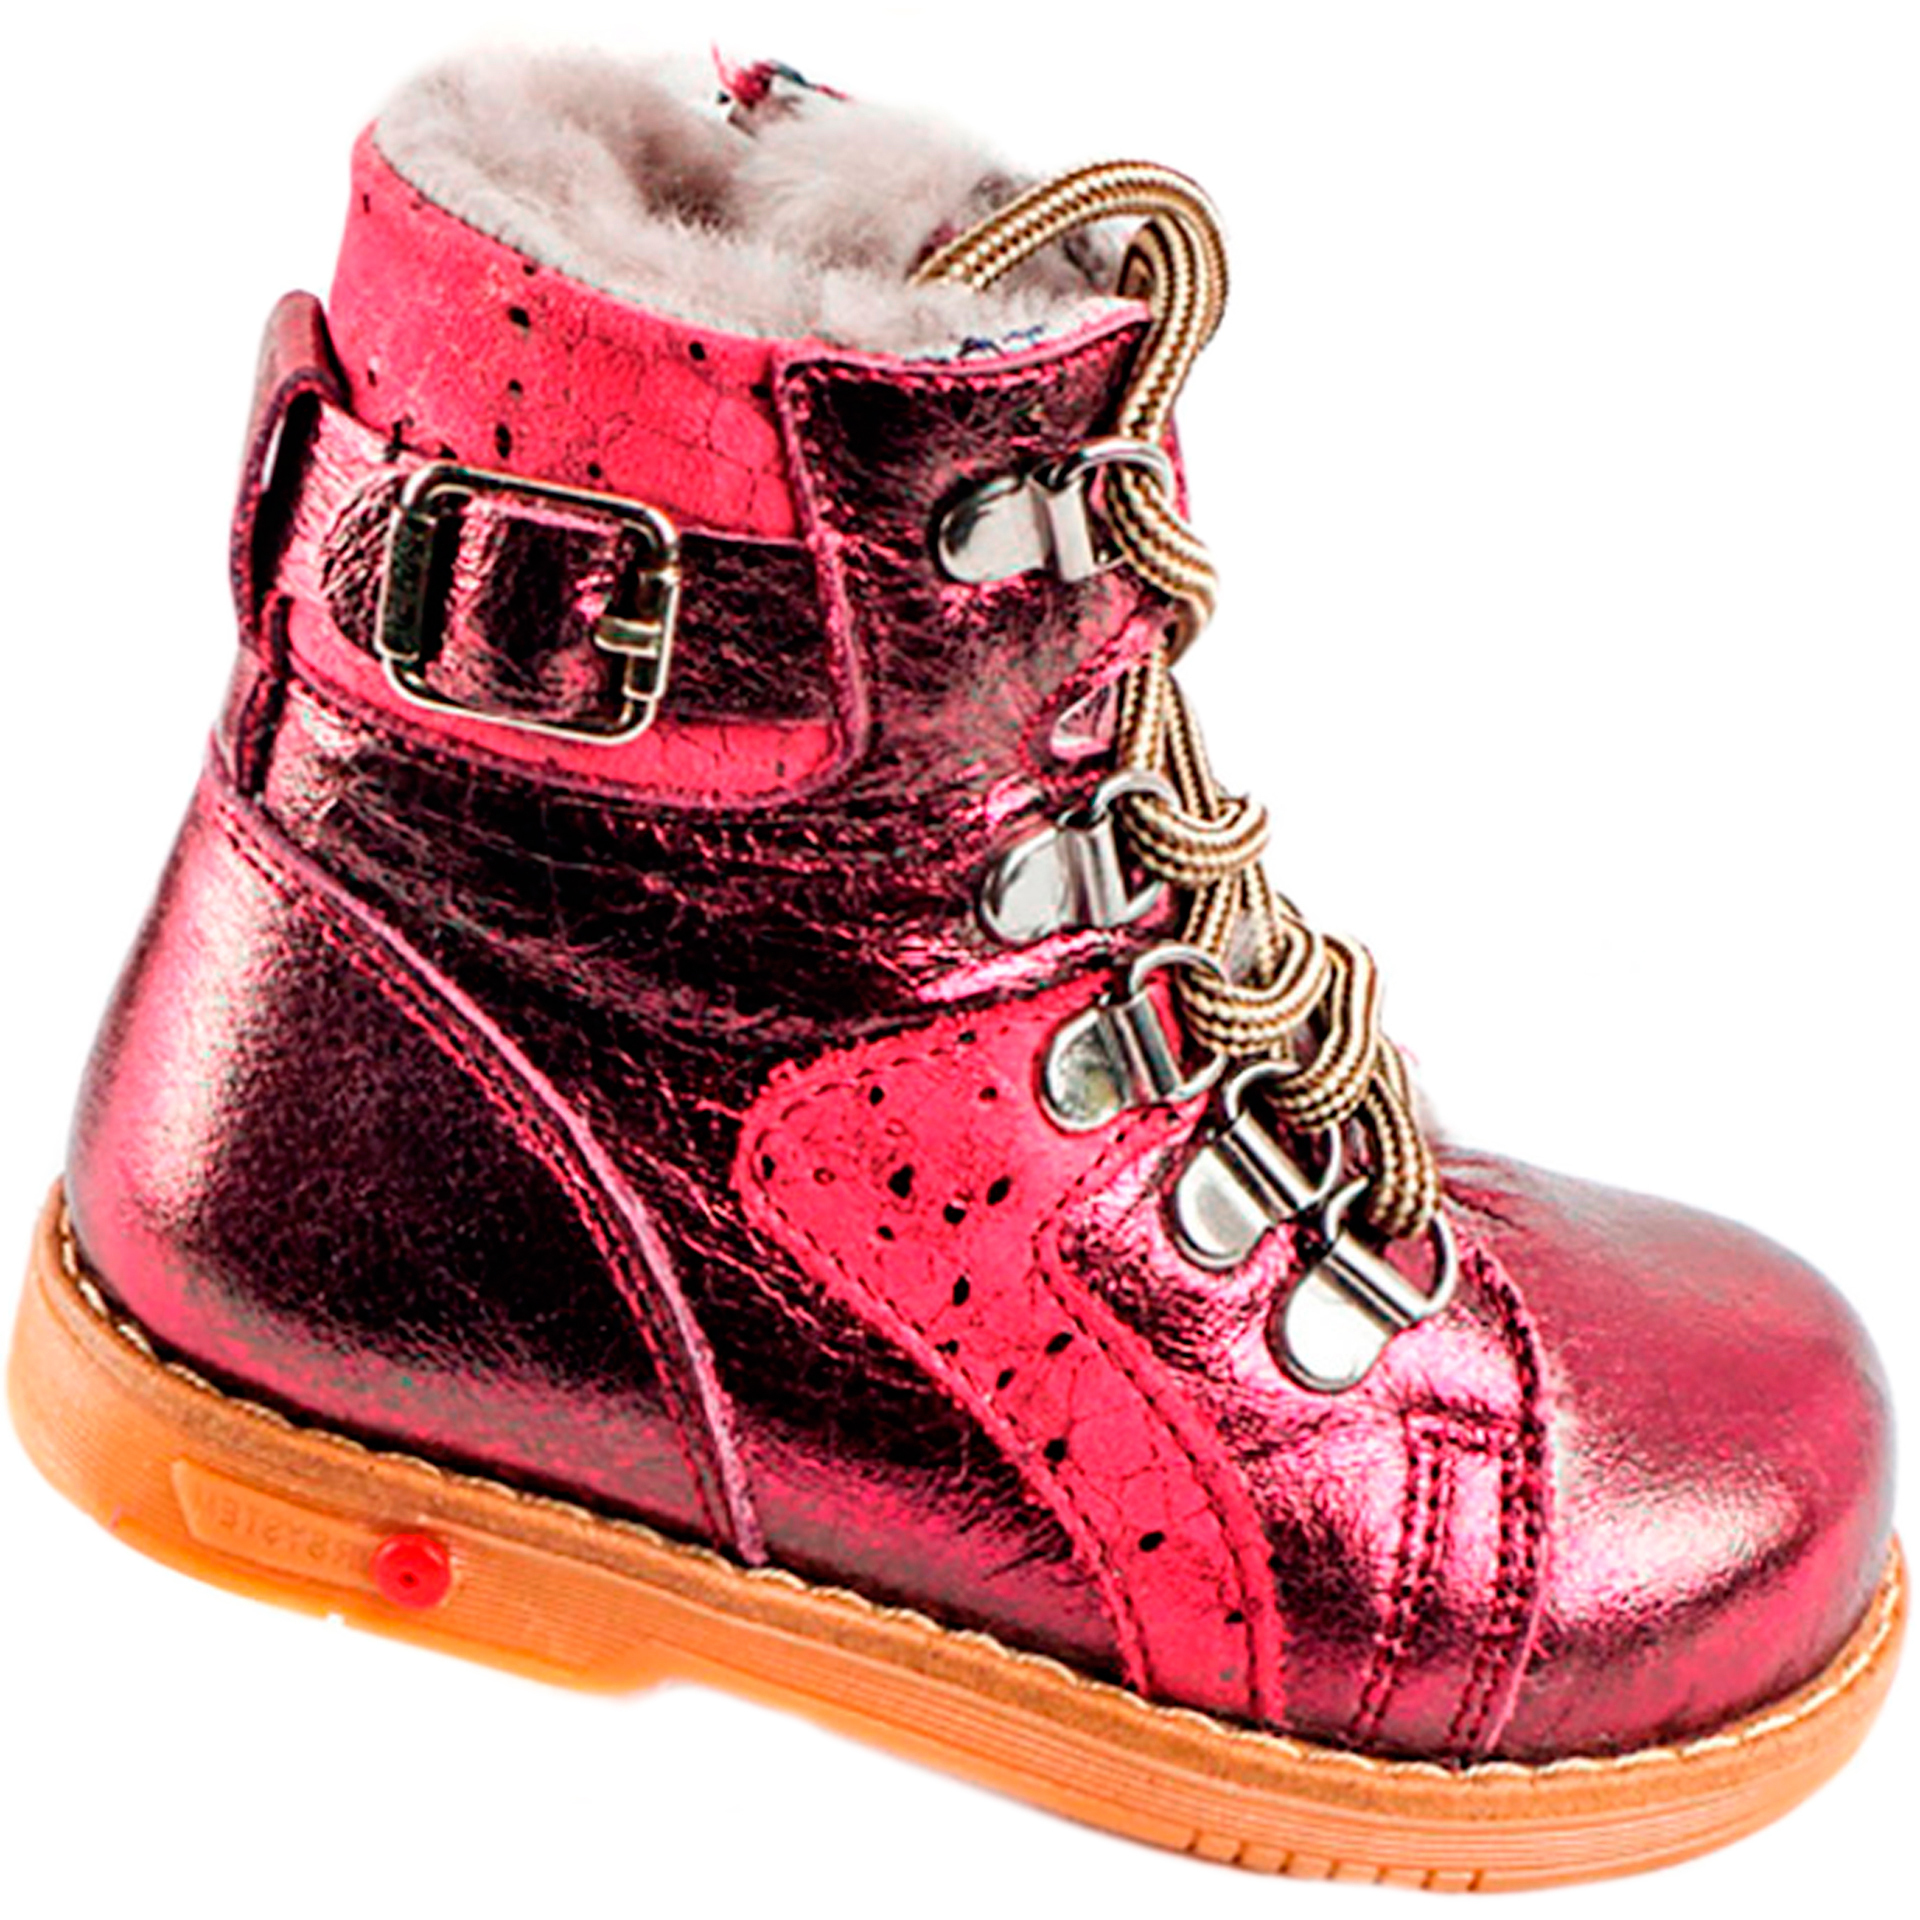 Tutubi Зимние ботинки детские (1269) материал Натуральная кожа, цвет Красный  для девочки 21-29 размеры – Sole Kids, Днепр. Фото 1